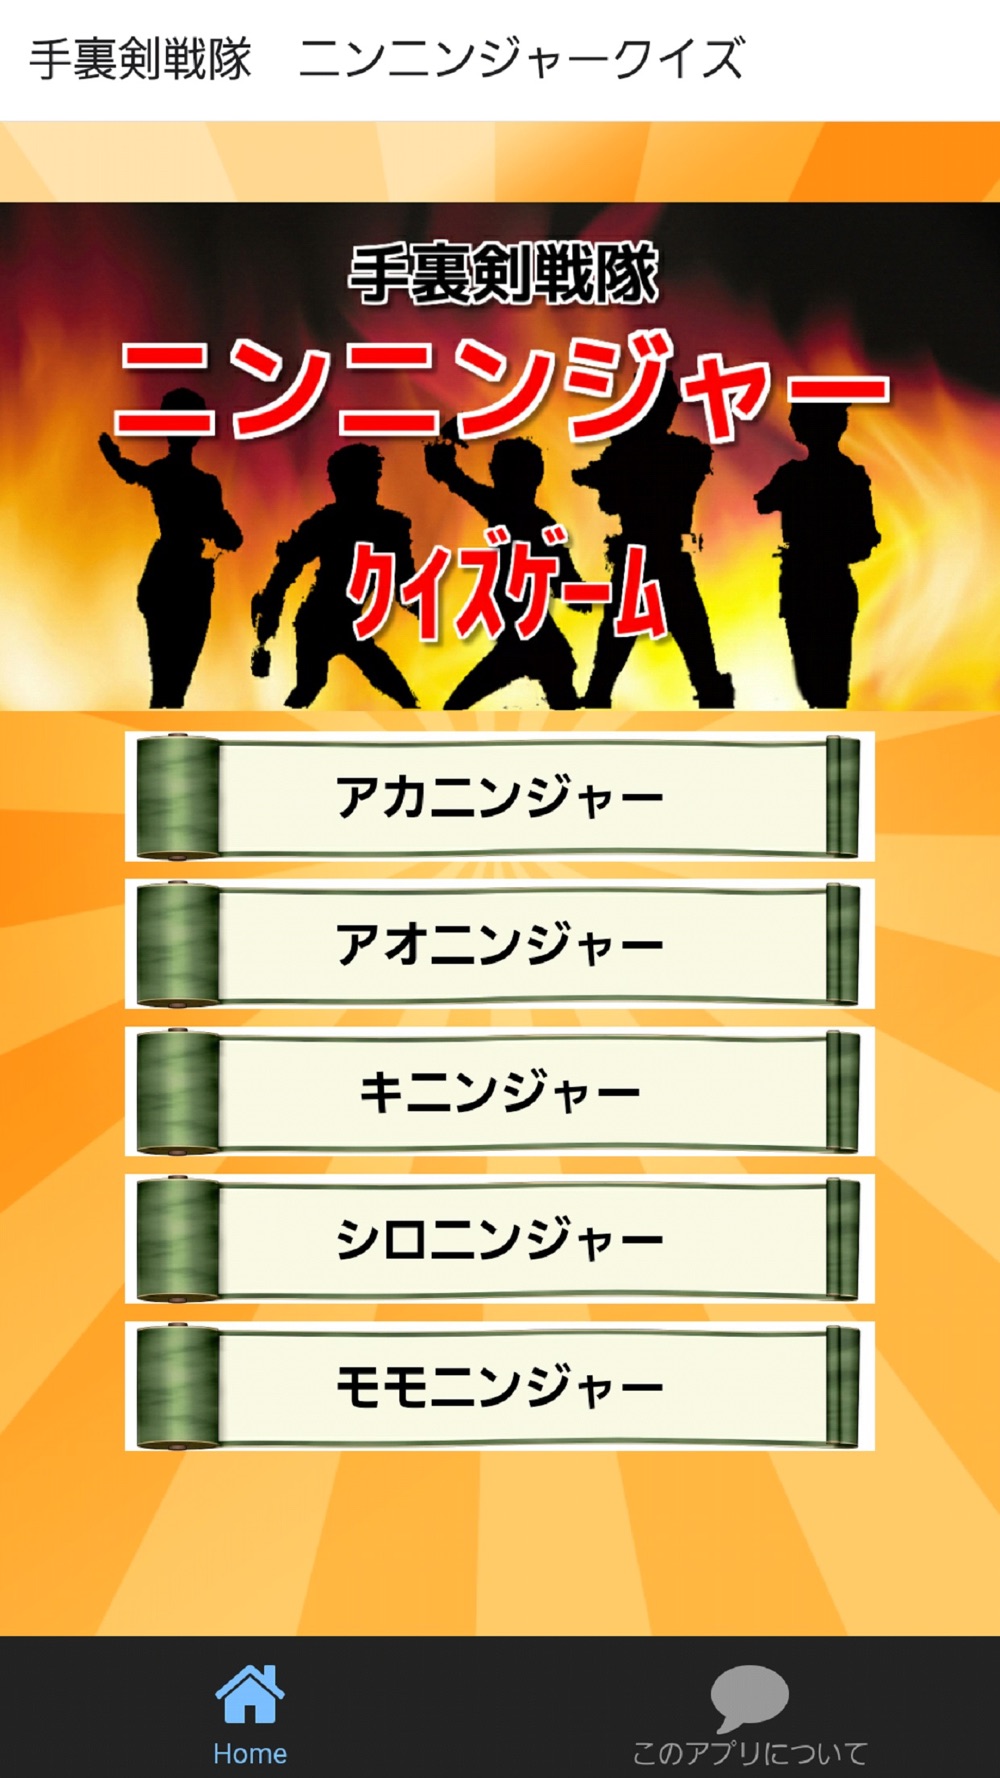 クイズゲーム For ニンニンジャー 子供用無料知育アプリ Free Download App For Iphone Steprimo Com